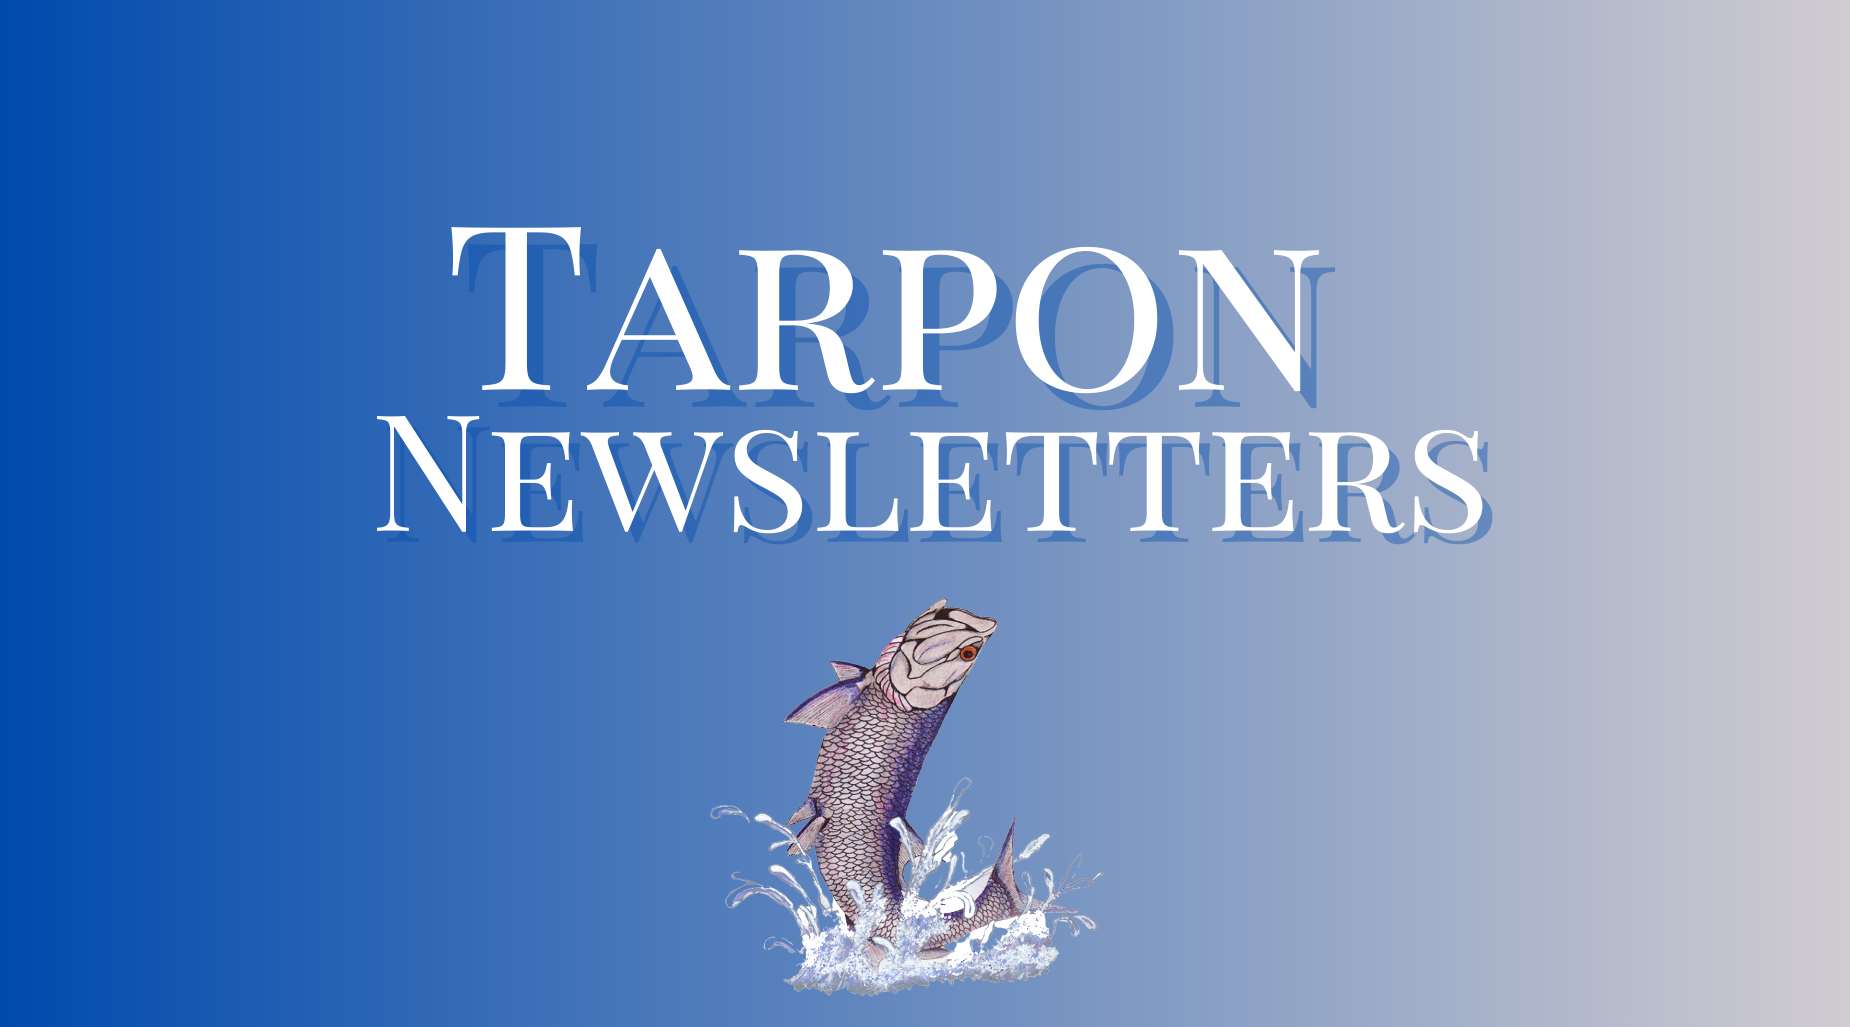 Tarpon newsletters